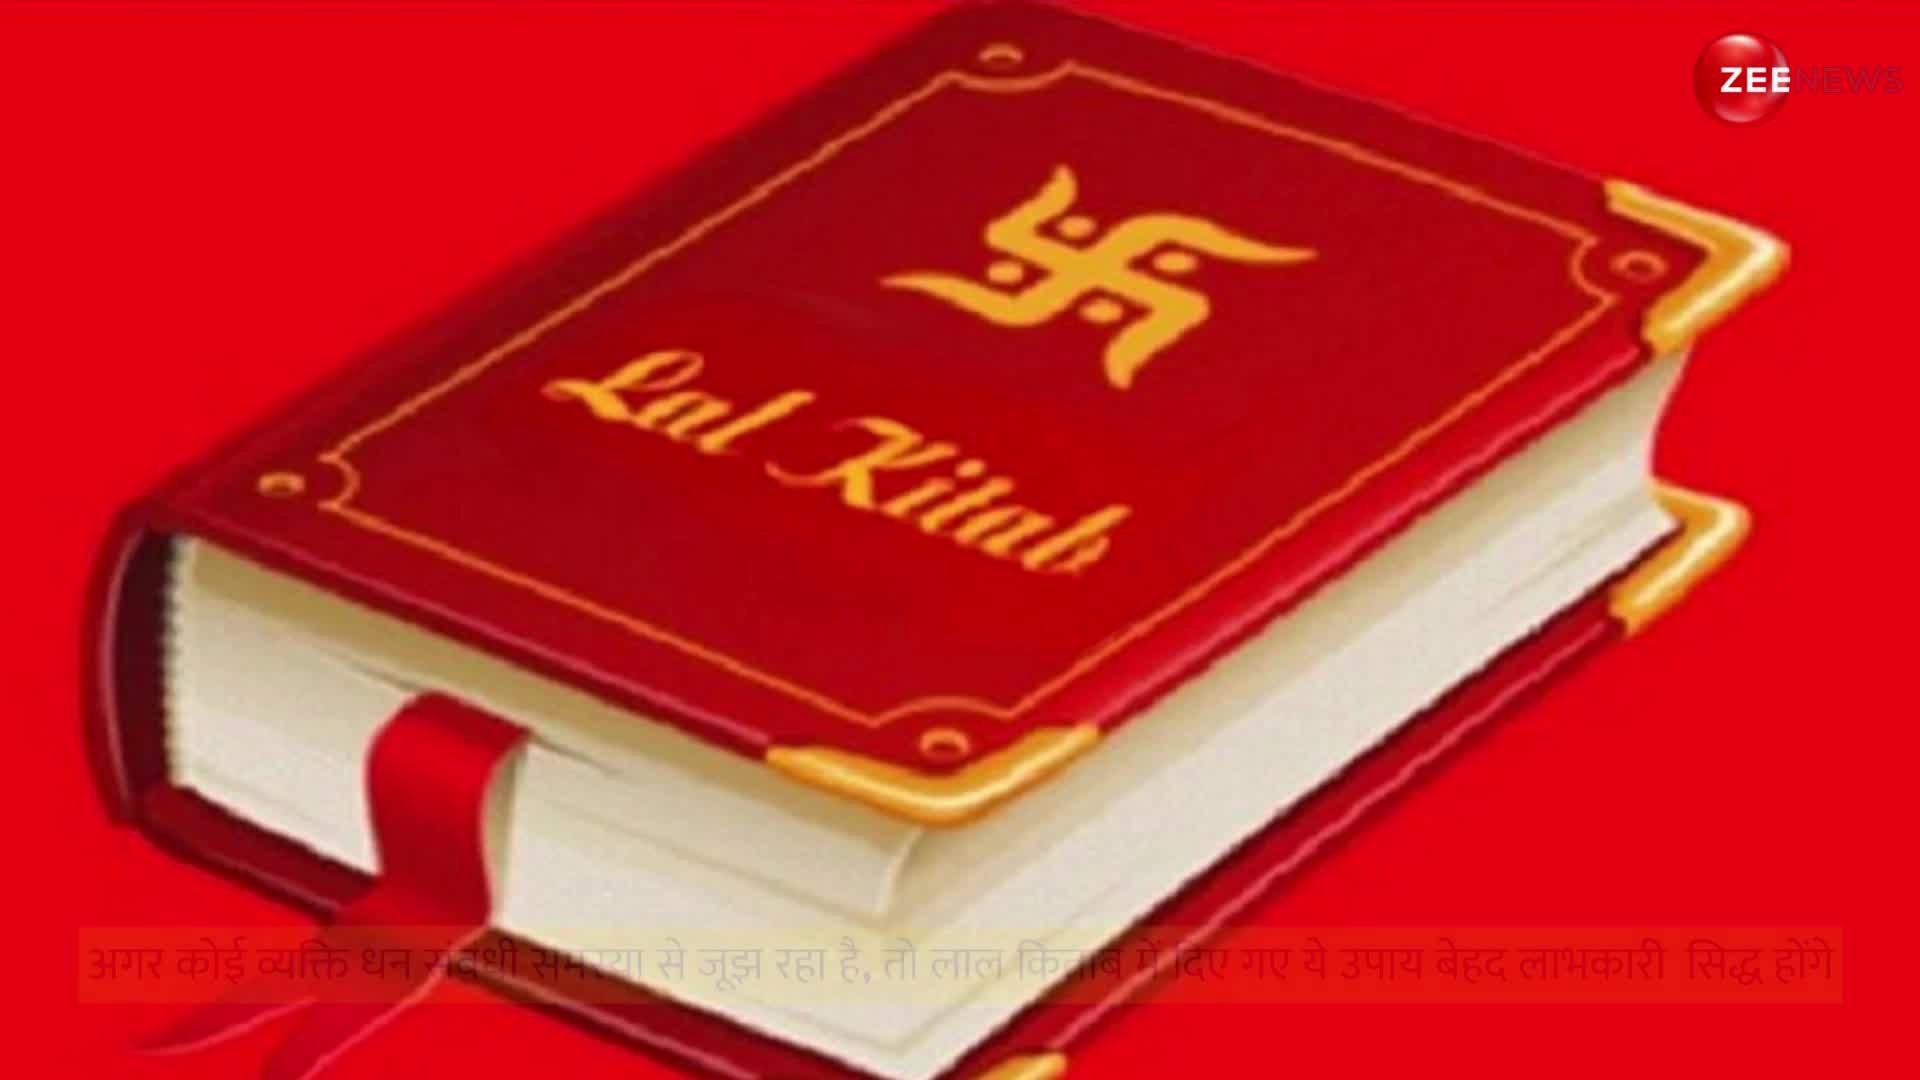 Lal Kitab Ke Upay: धनवान बनाते हैं लाल किताब के ये टोटके, रात को सोते समय सिरहाने रख लें ये एक चीज